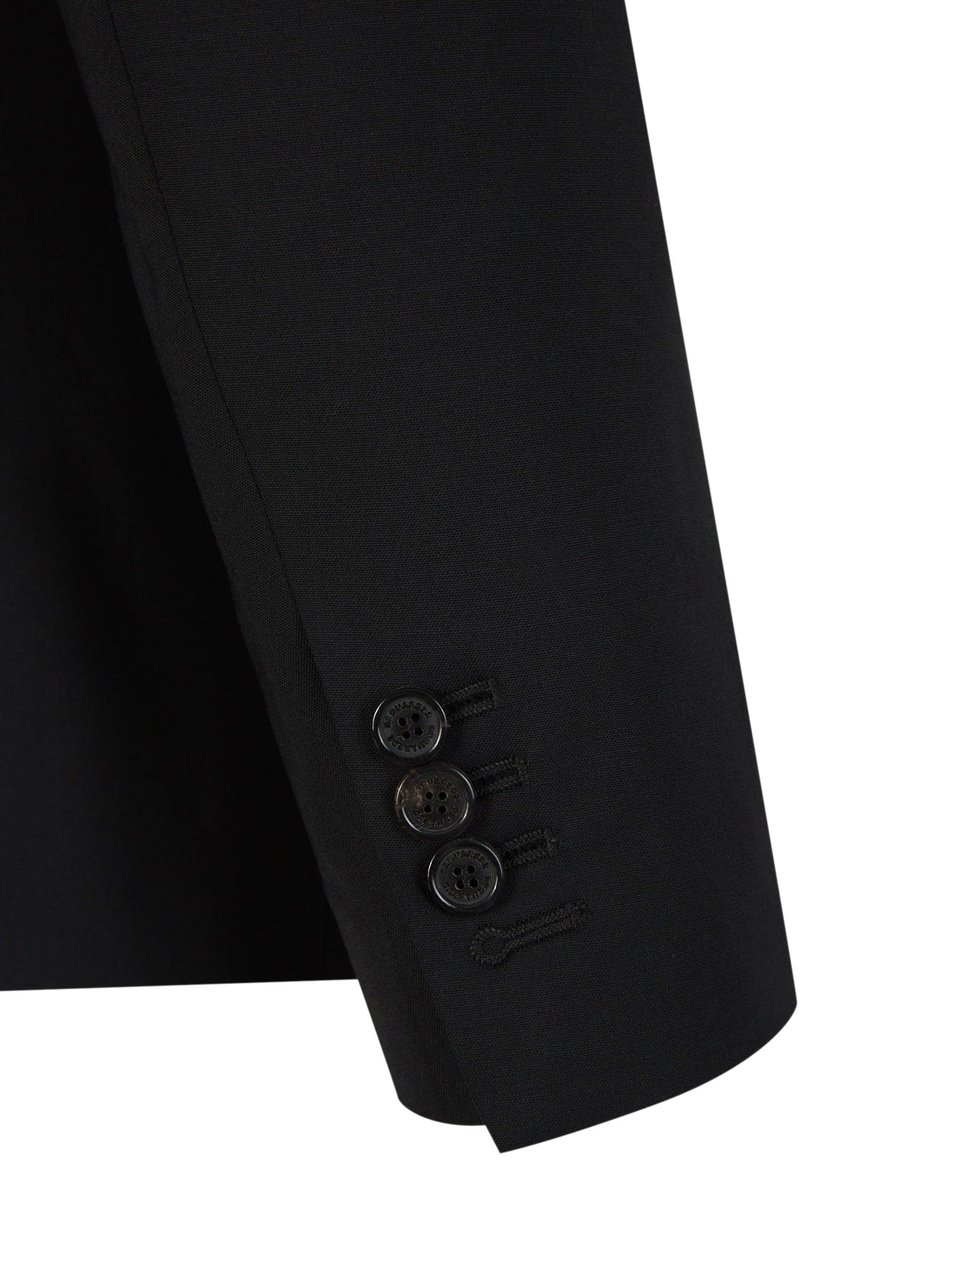 Dsquared2 Plain Wool Suit Zwart